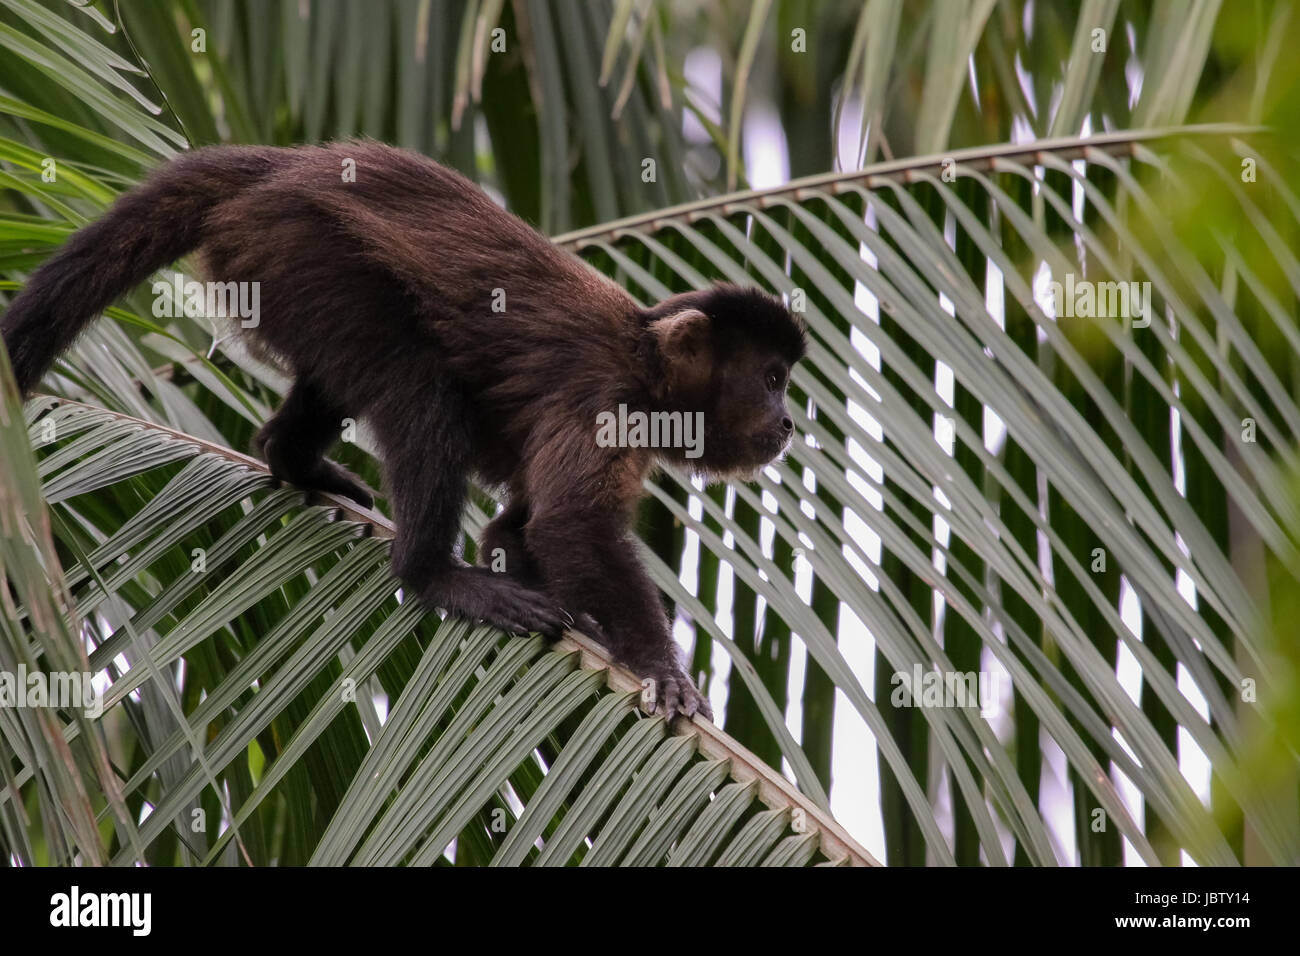 Capucin brun grimpant sur une feuille d'un palmier, forêt atlantique, Itatiaia, Brésil Banque D'Images